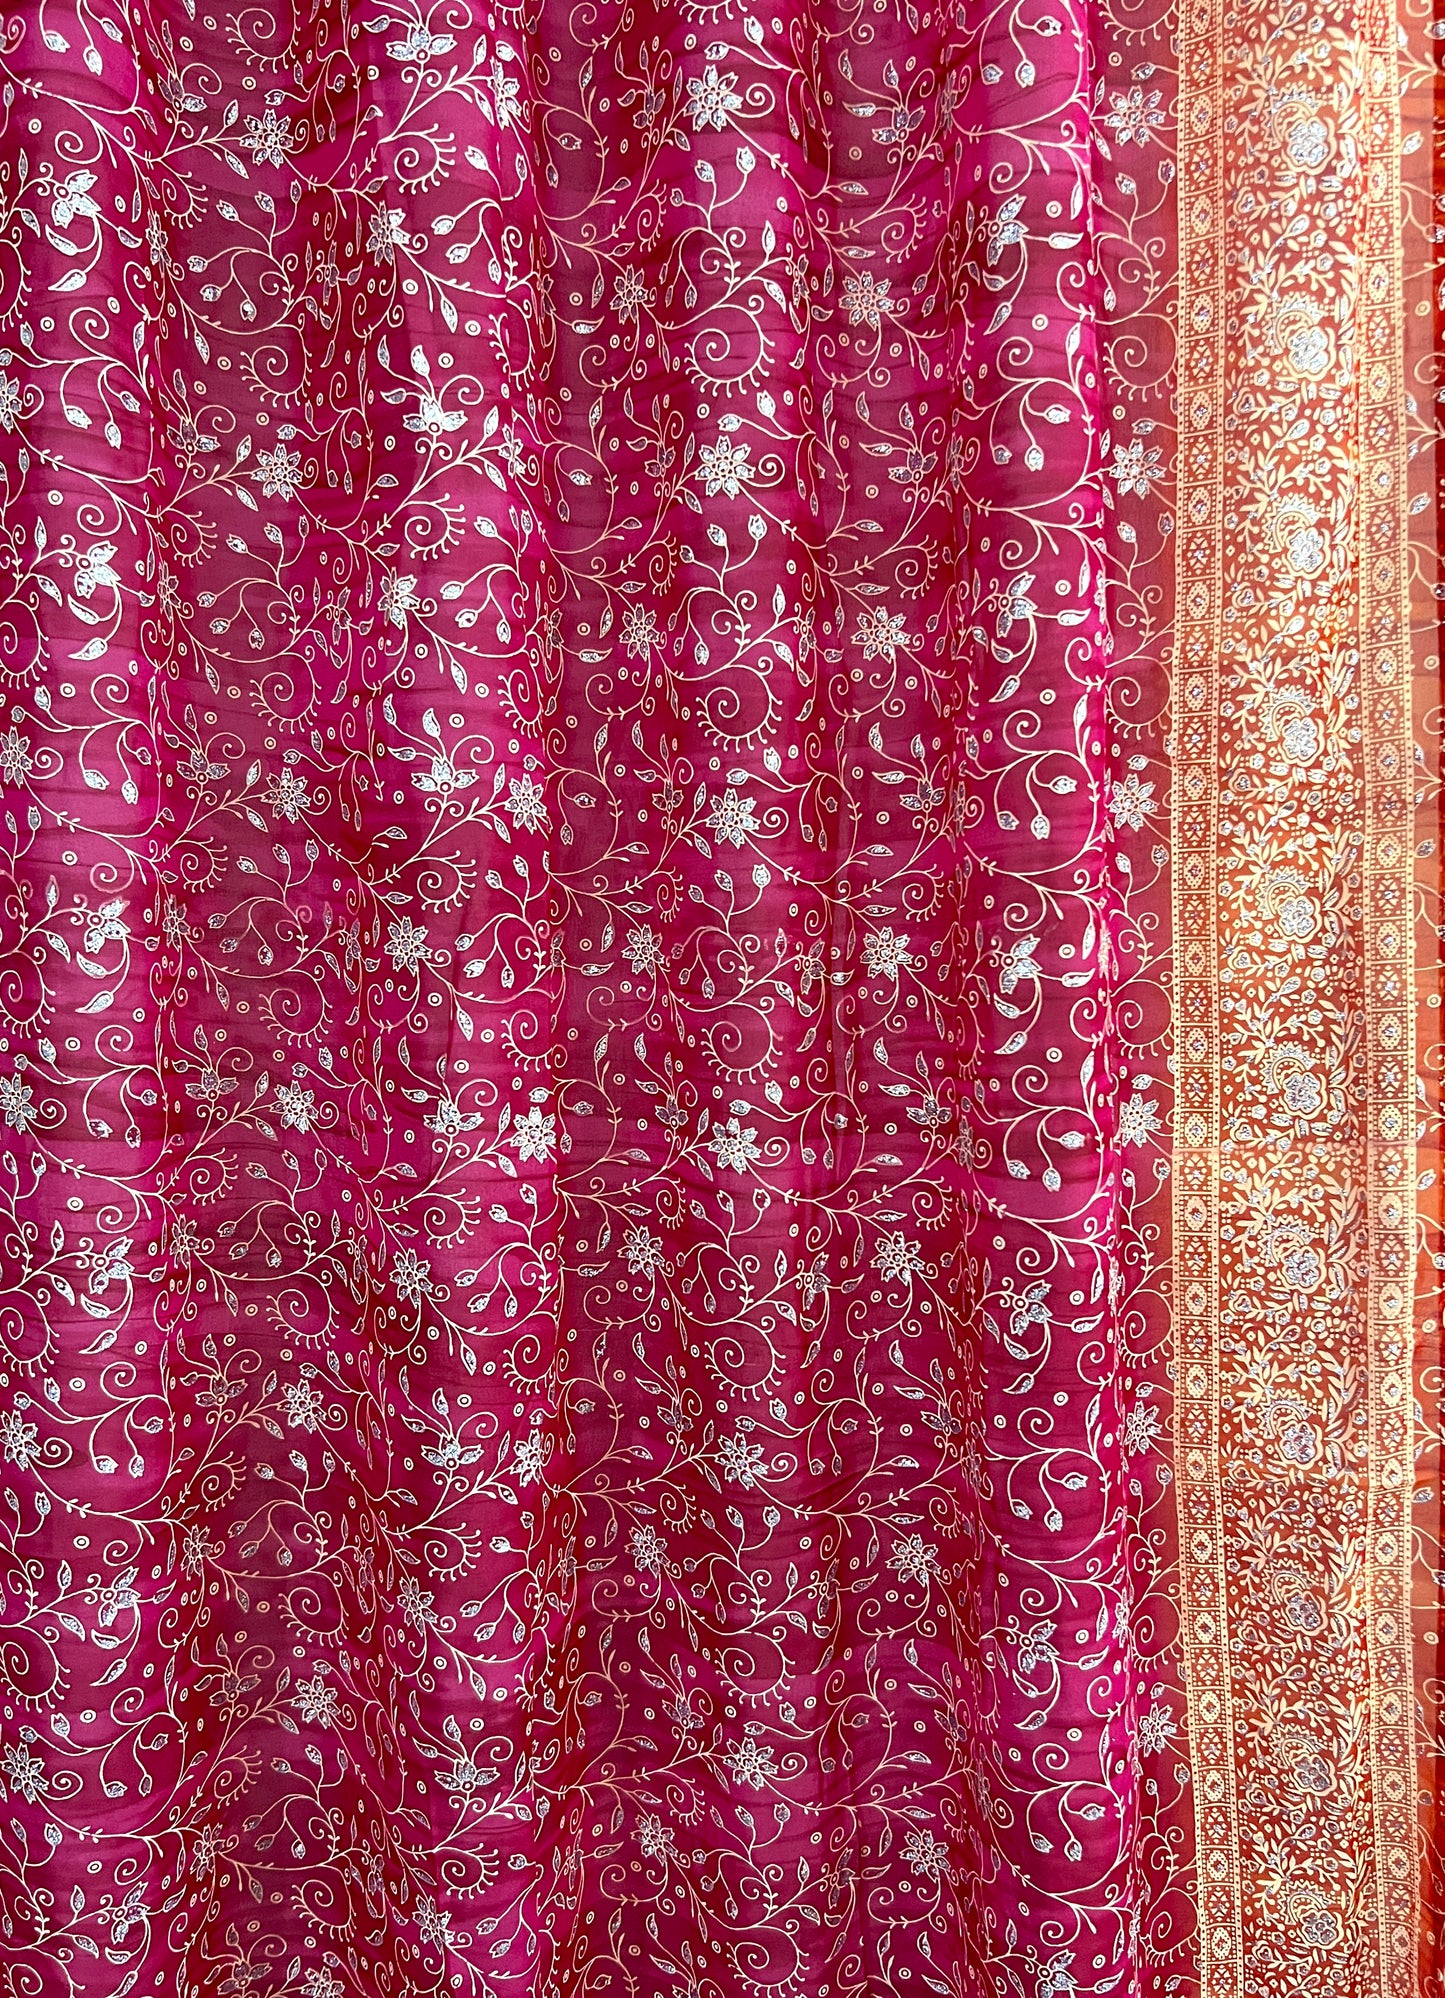 Red & Orange Sari Curtain Panels